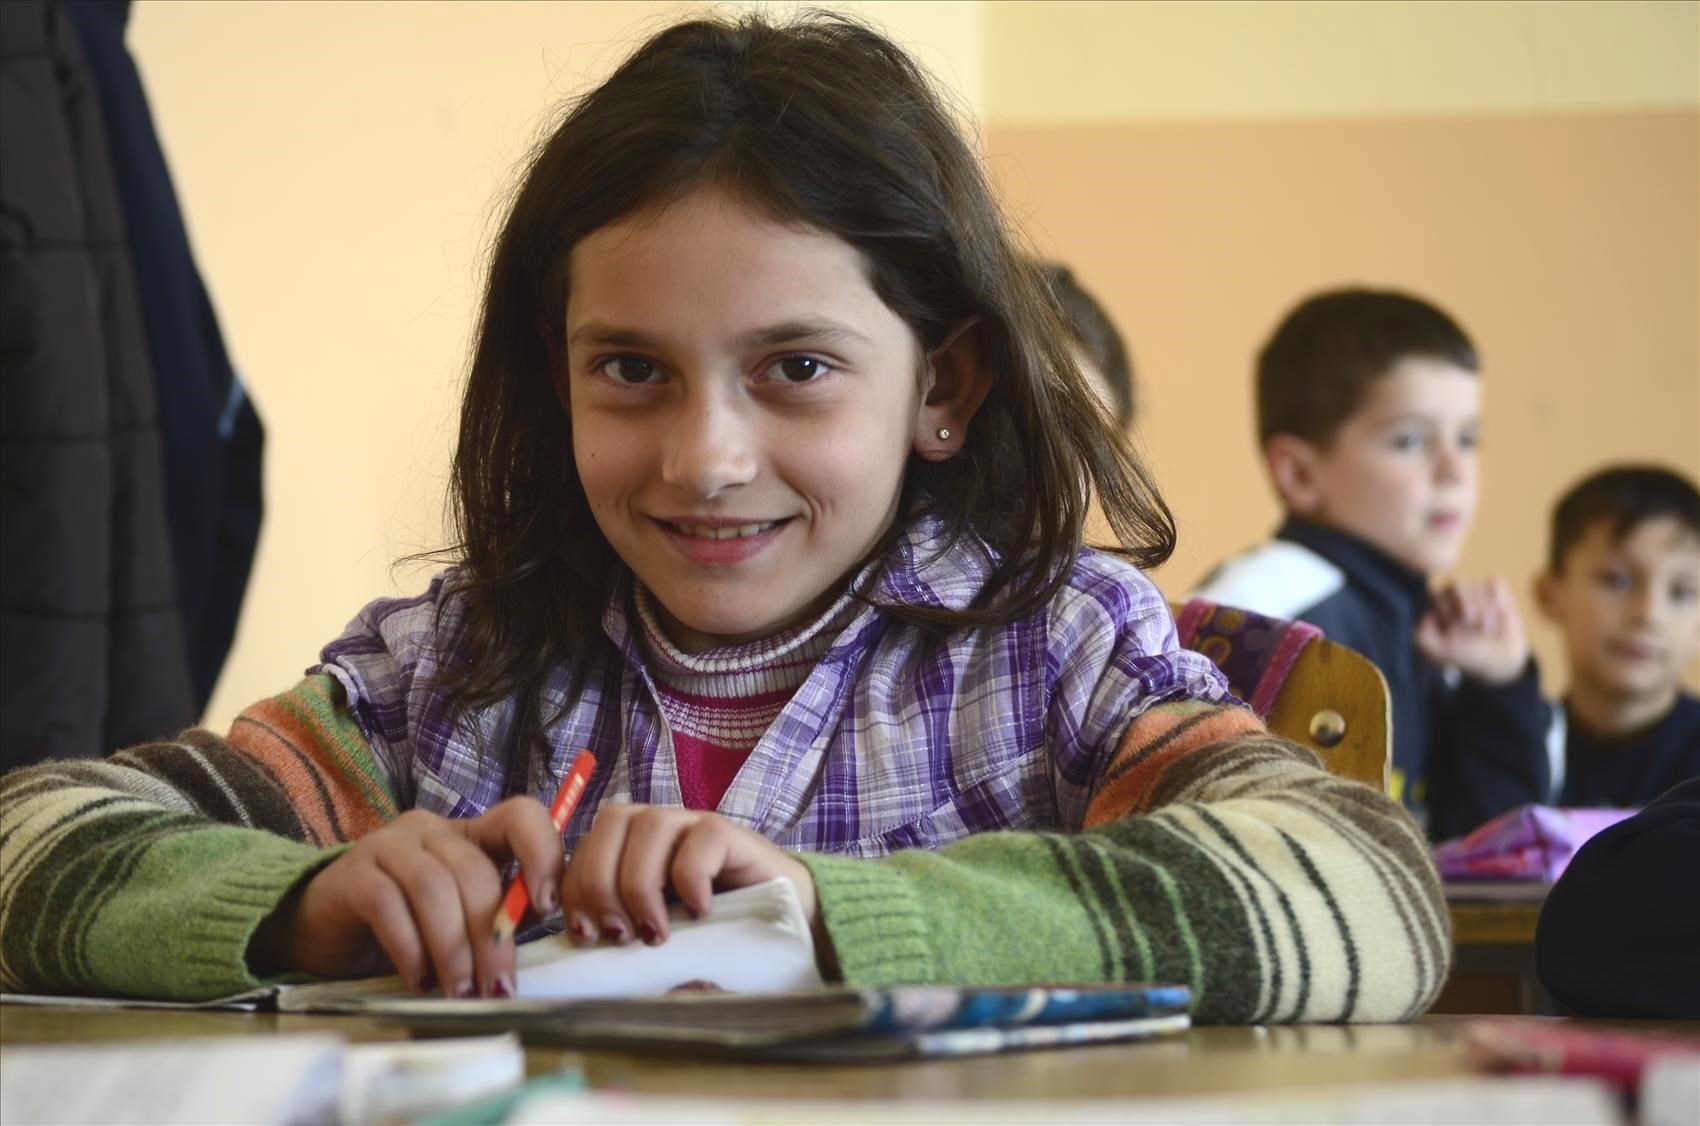 Nå går Bona på skole og kan både lese og skrive. Foto: Katerina Ilievska